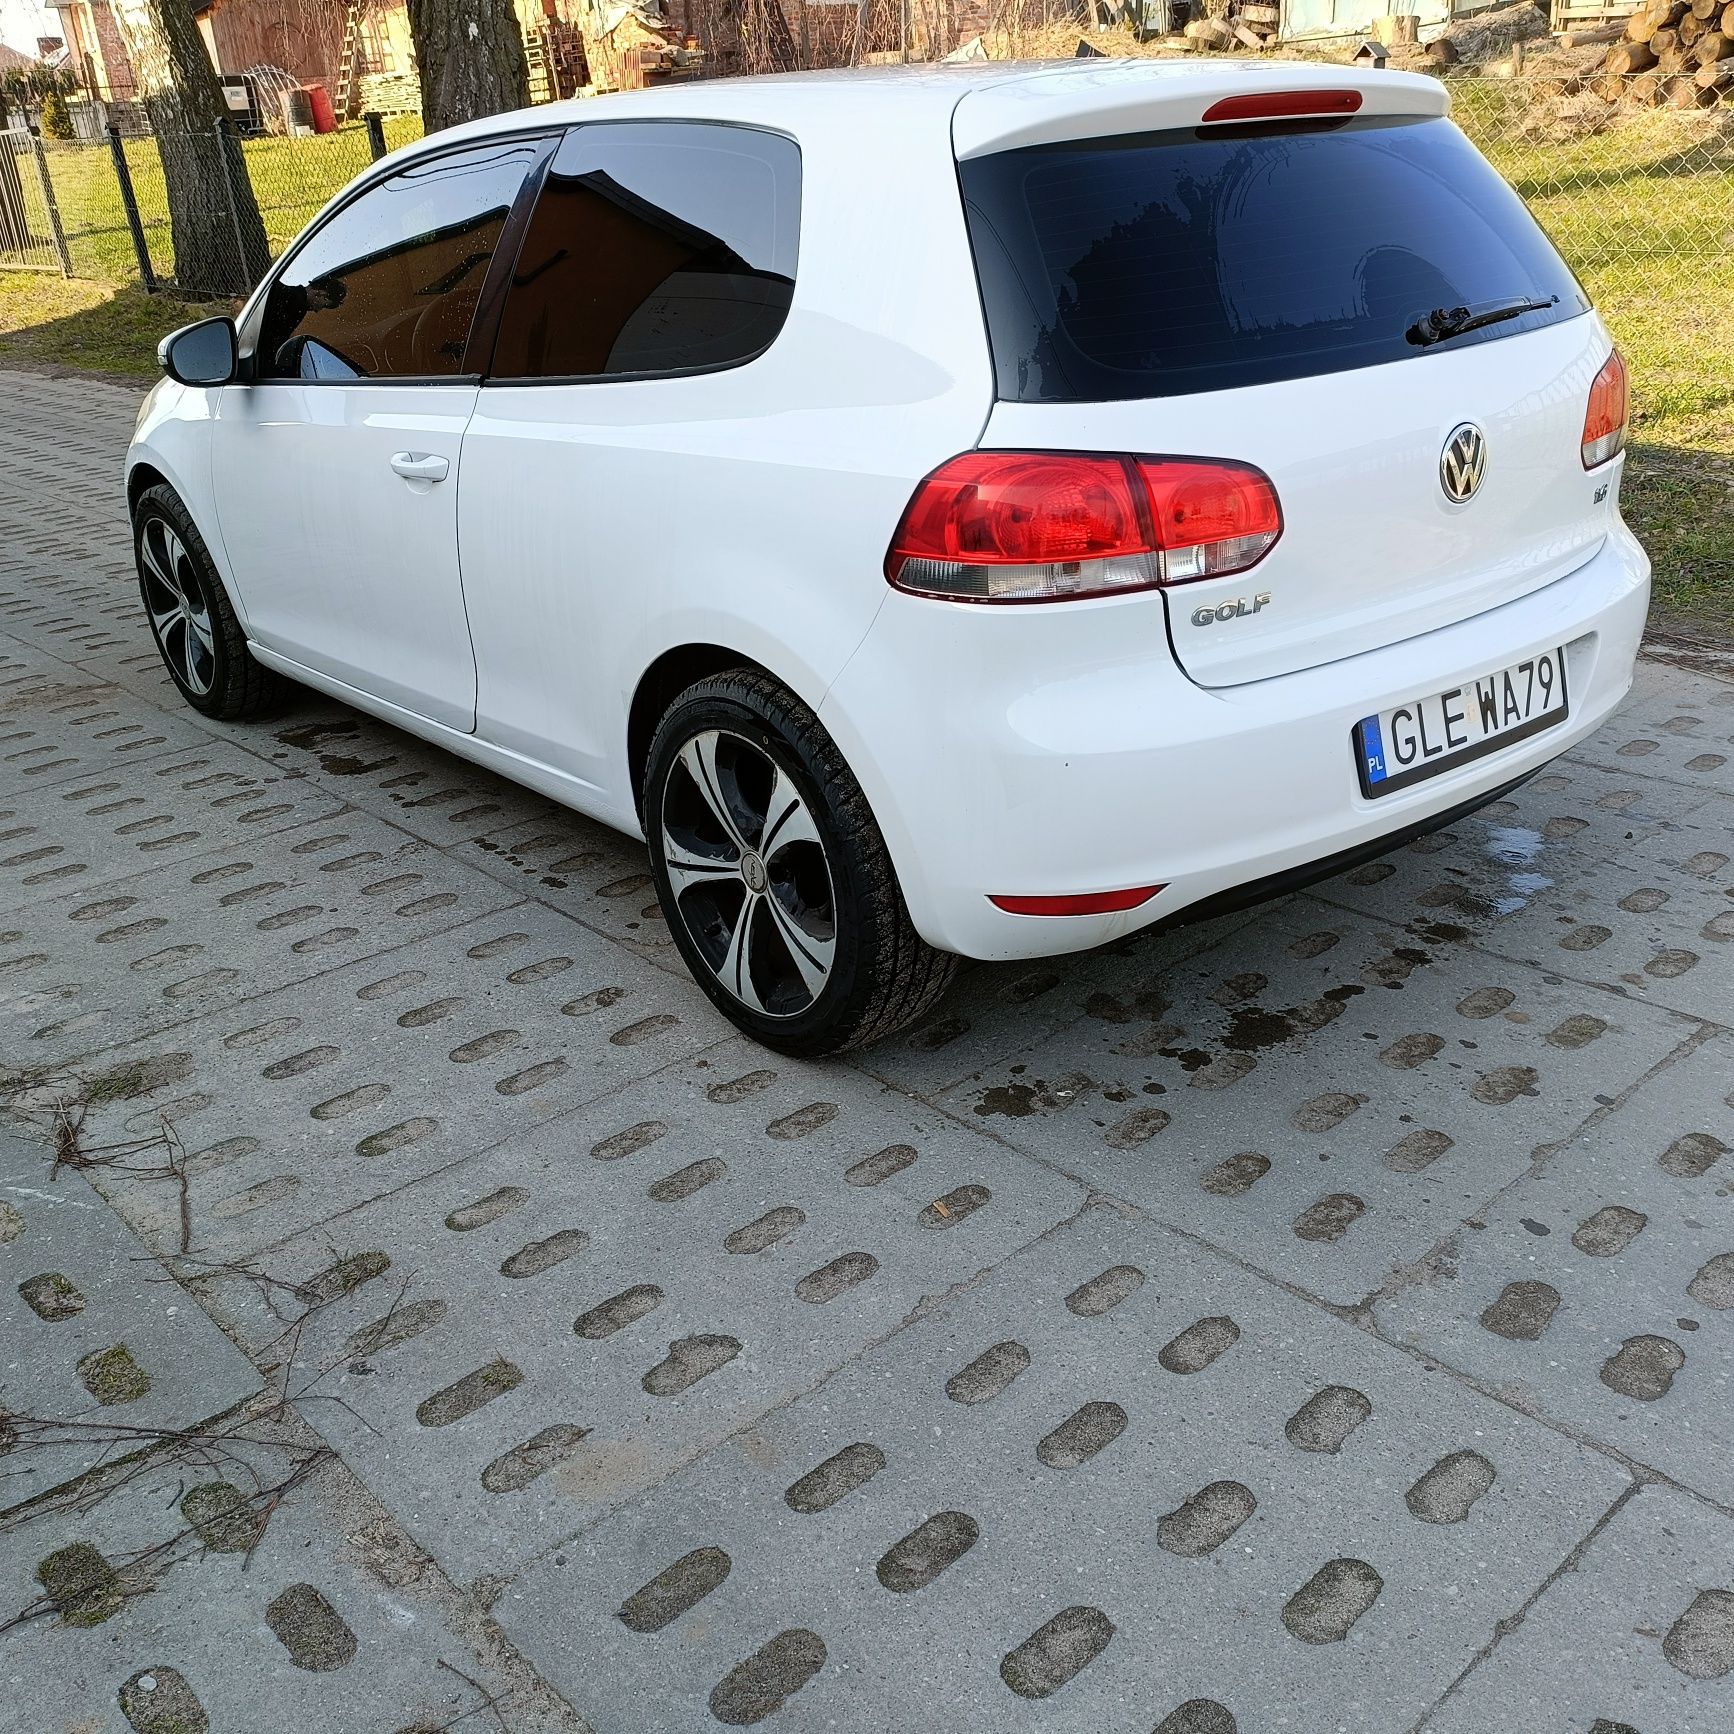 Sprzedam VW golf 1.6 benzyna